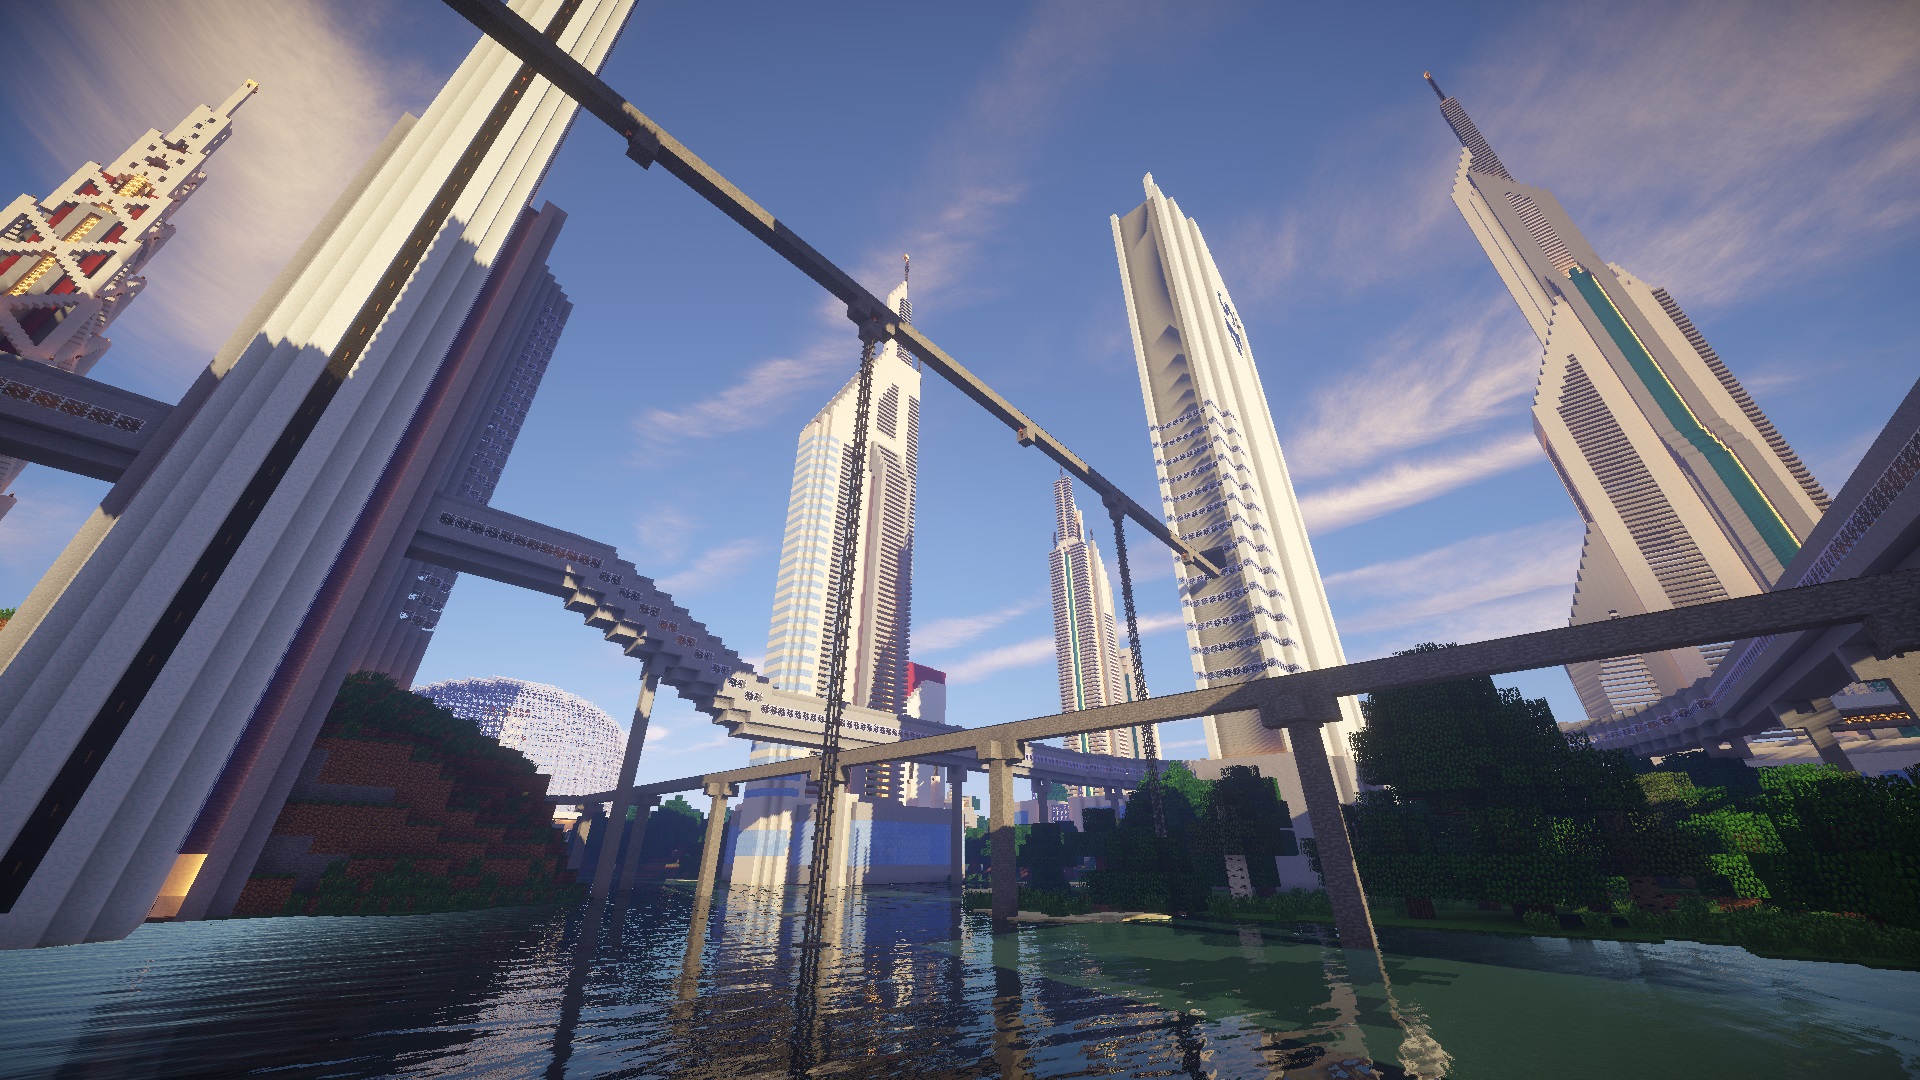 Map Ville Futuriste Créatif Minecraft